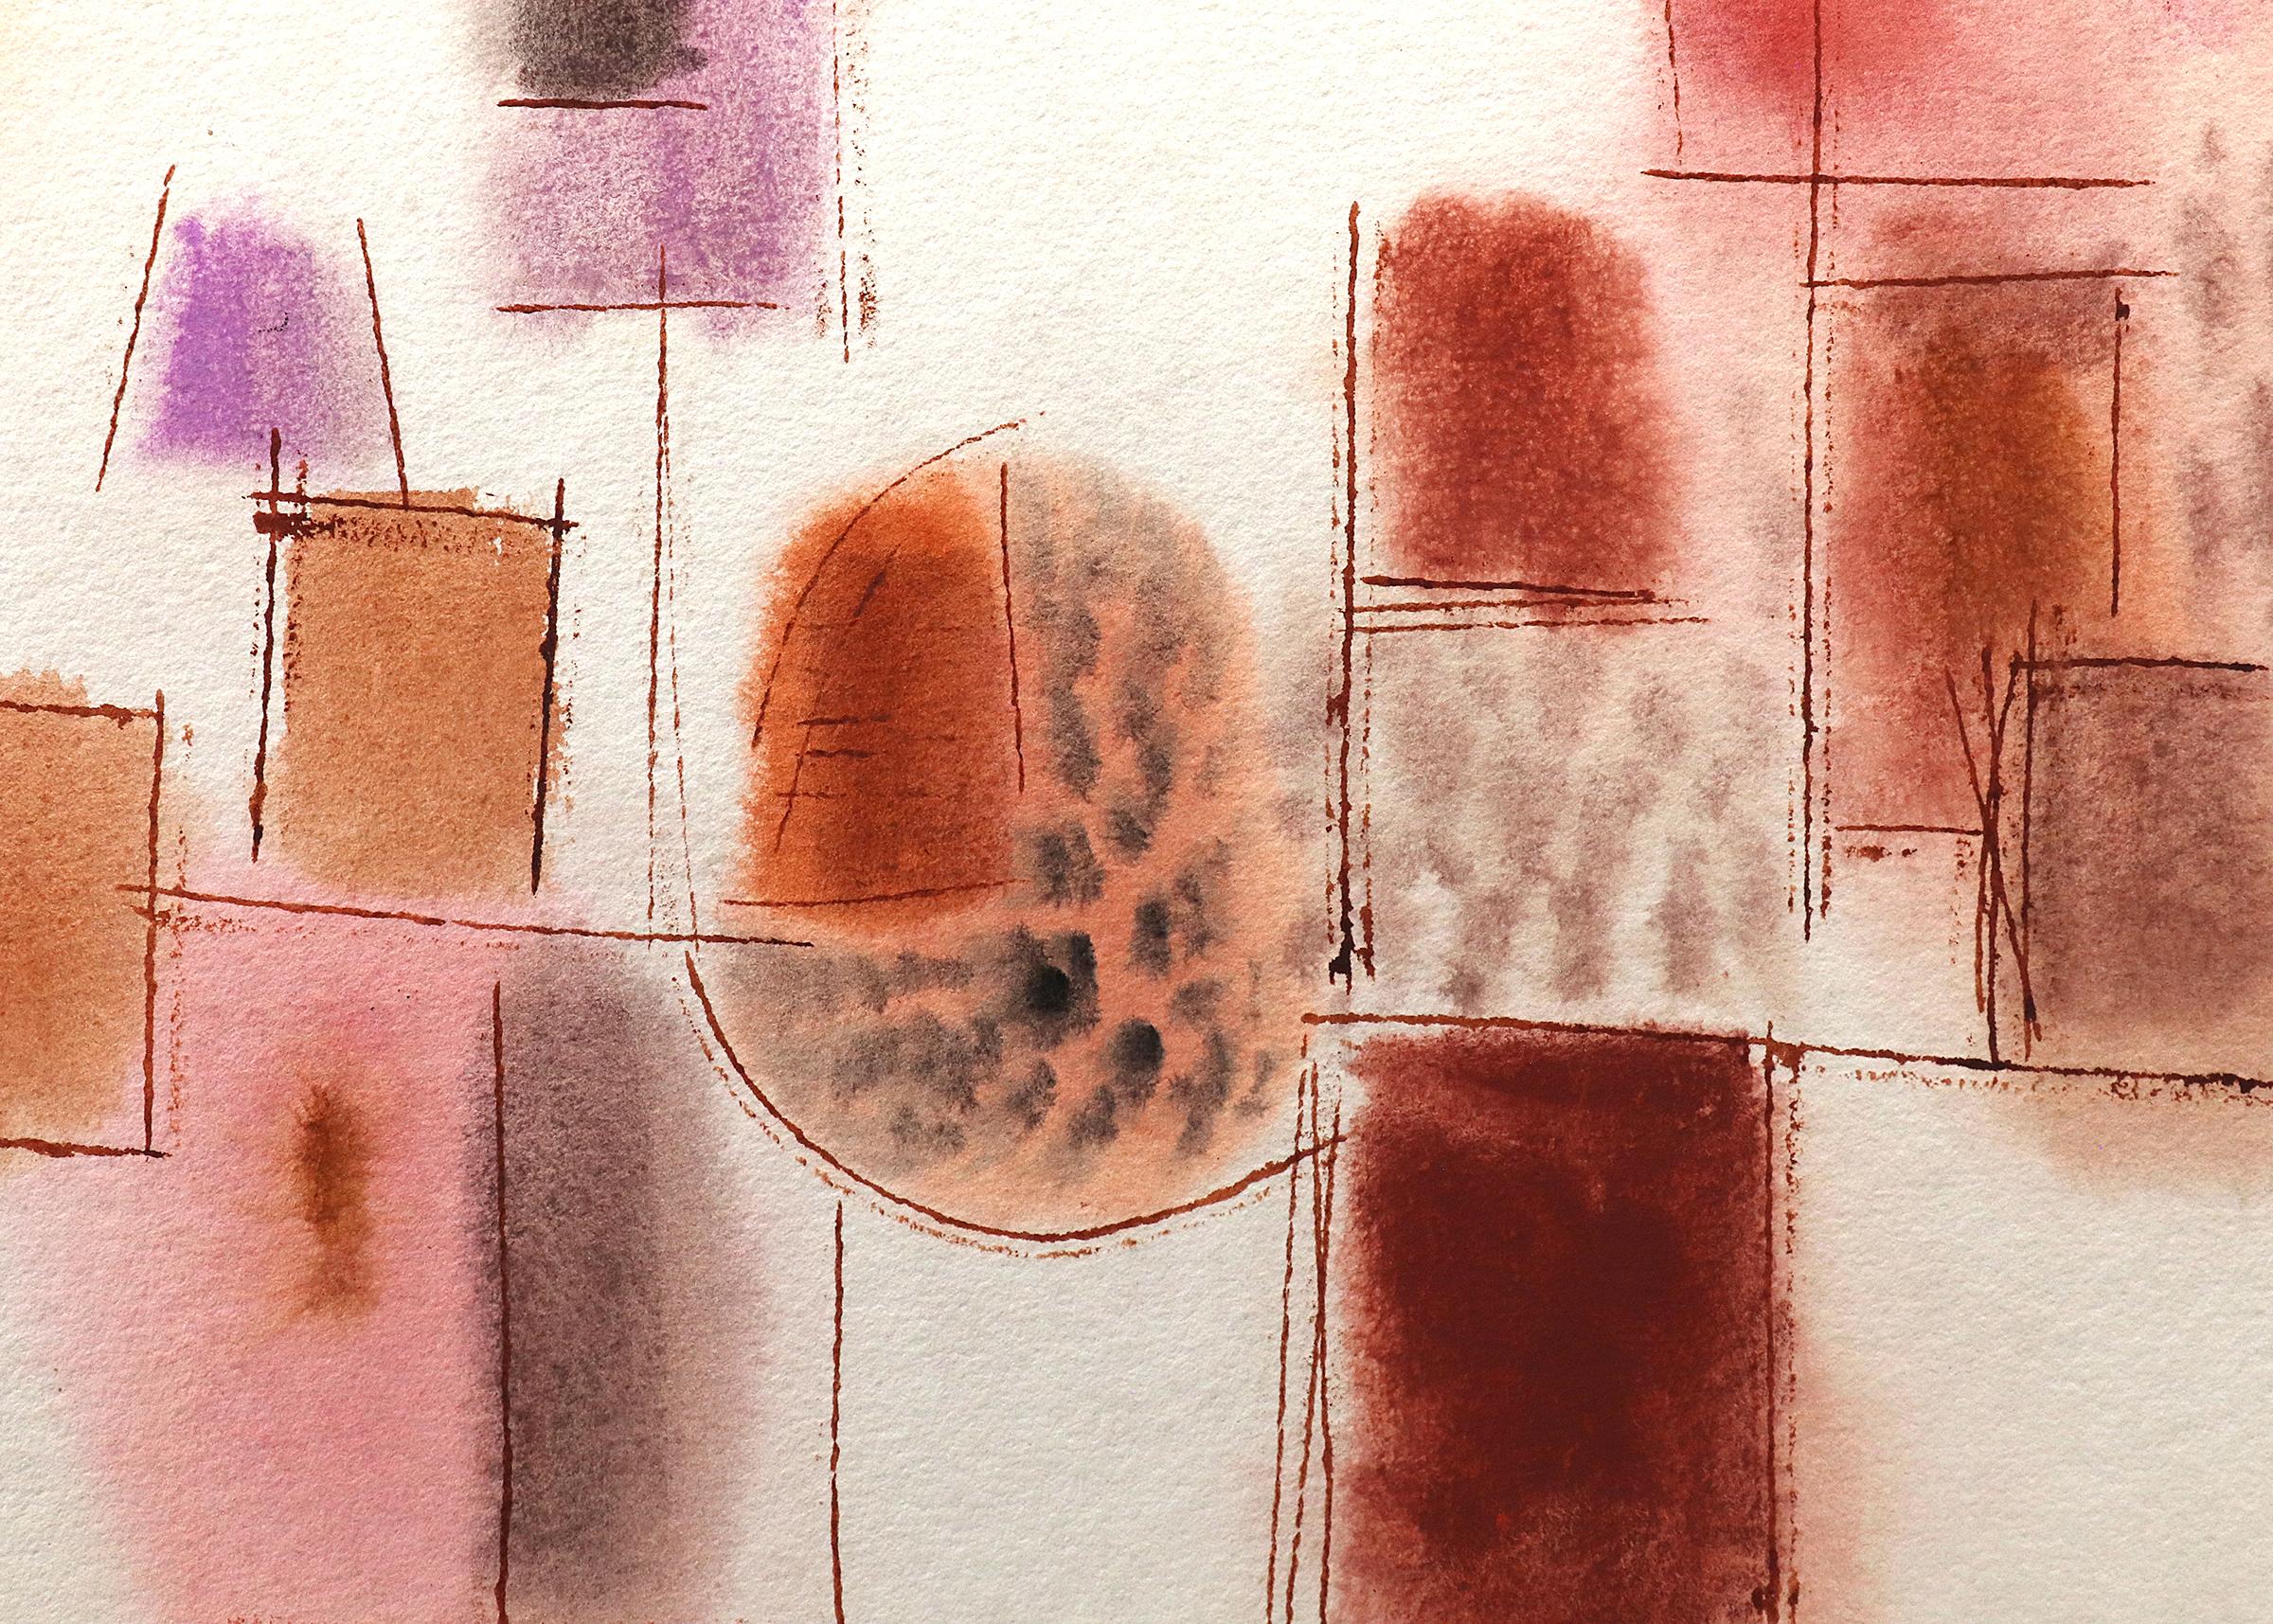 Aquarelle abstraite rose, orange et rouge sur papier de Lynn R. WOLFS (1917-2019). Signé par l'artiste dans le coin inférieur gauche. Présenté dans un cadre personnalisé avec tous les matériaux d'archives mesurant 27 ½ x 34 ¼ ; la taille de l'image